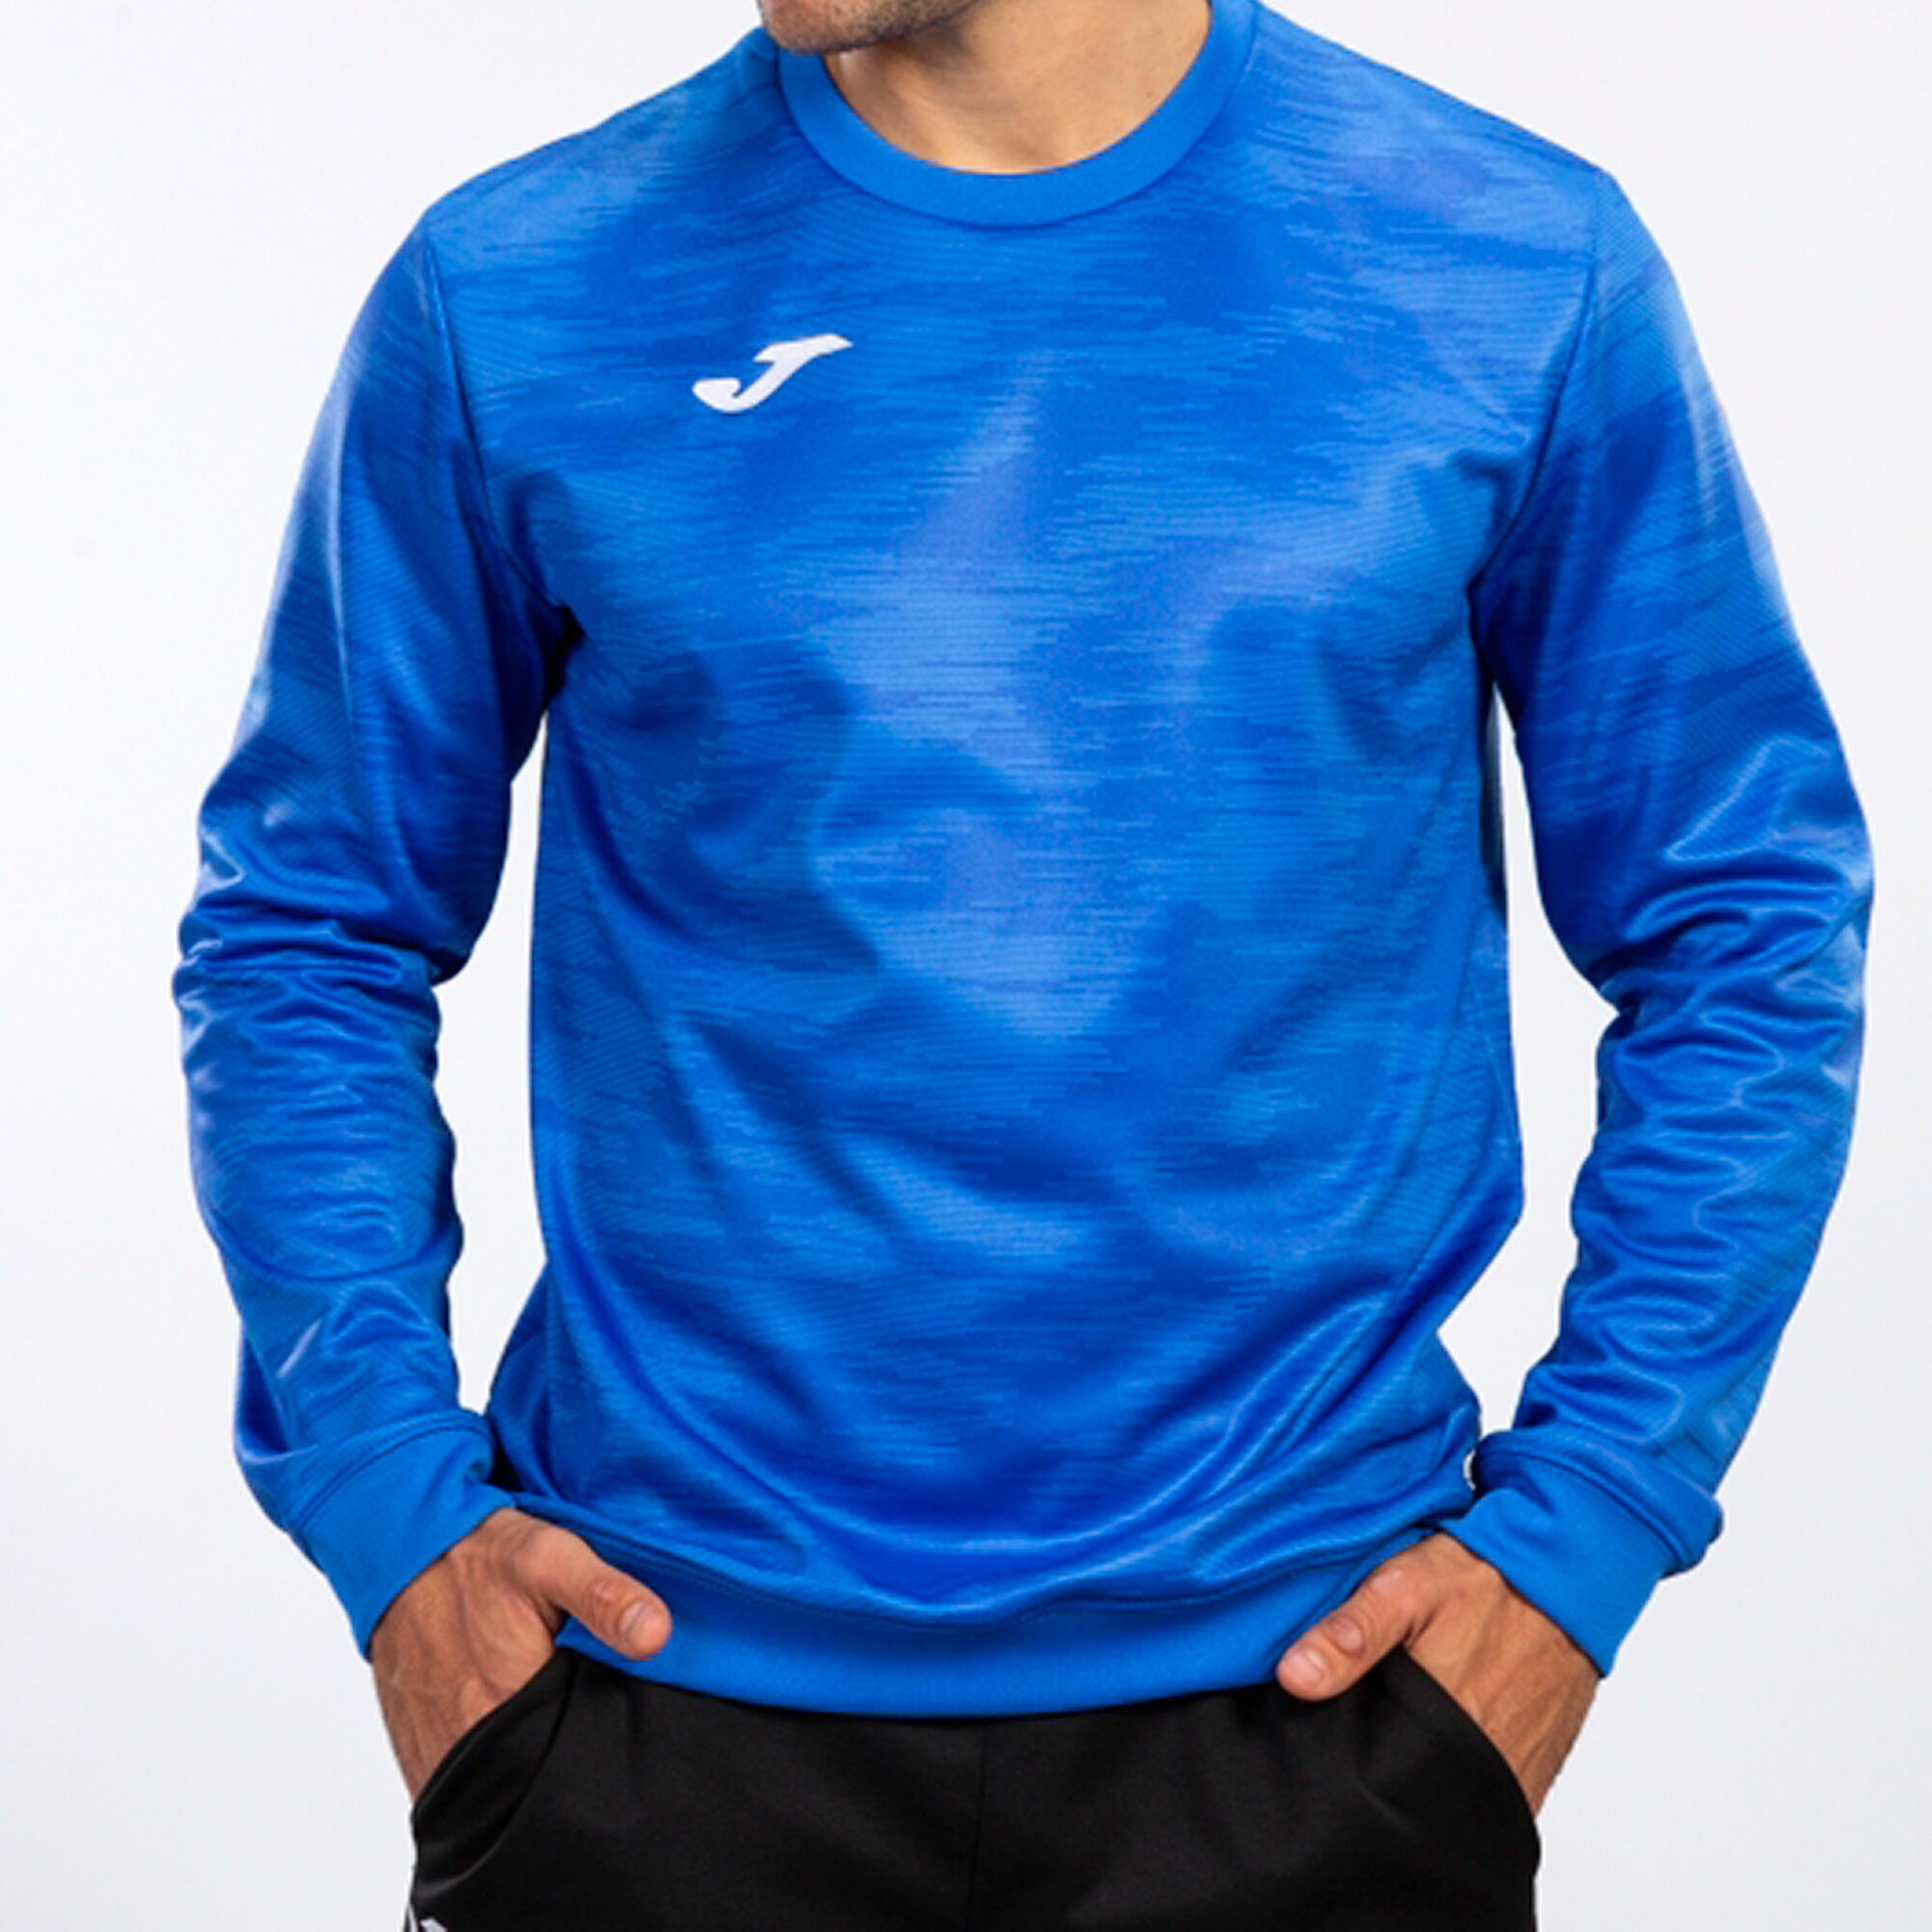 Sweatshirt mann Grafity königsblau